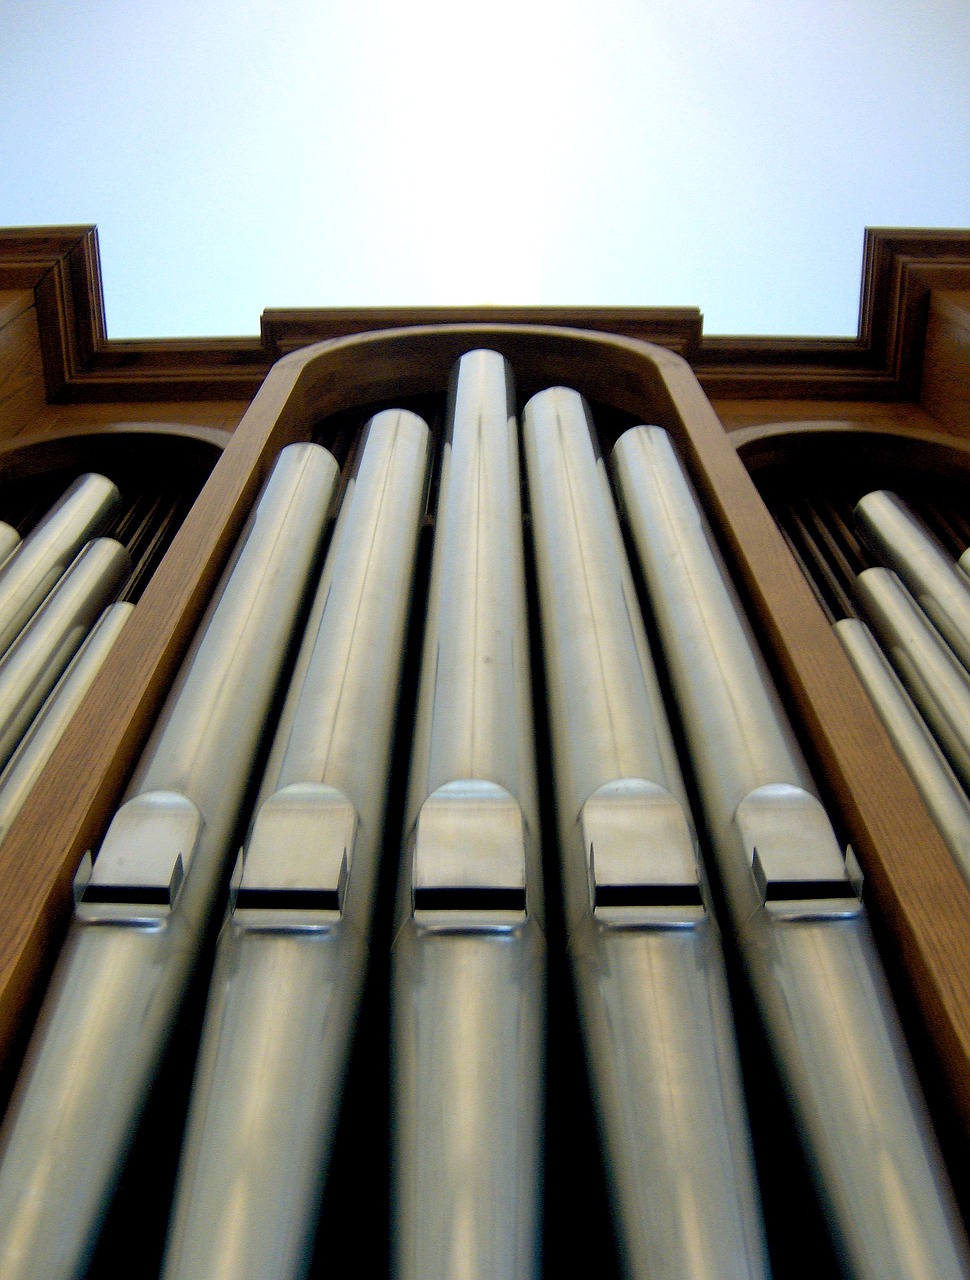 pipe organ pipes organ free photo